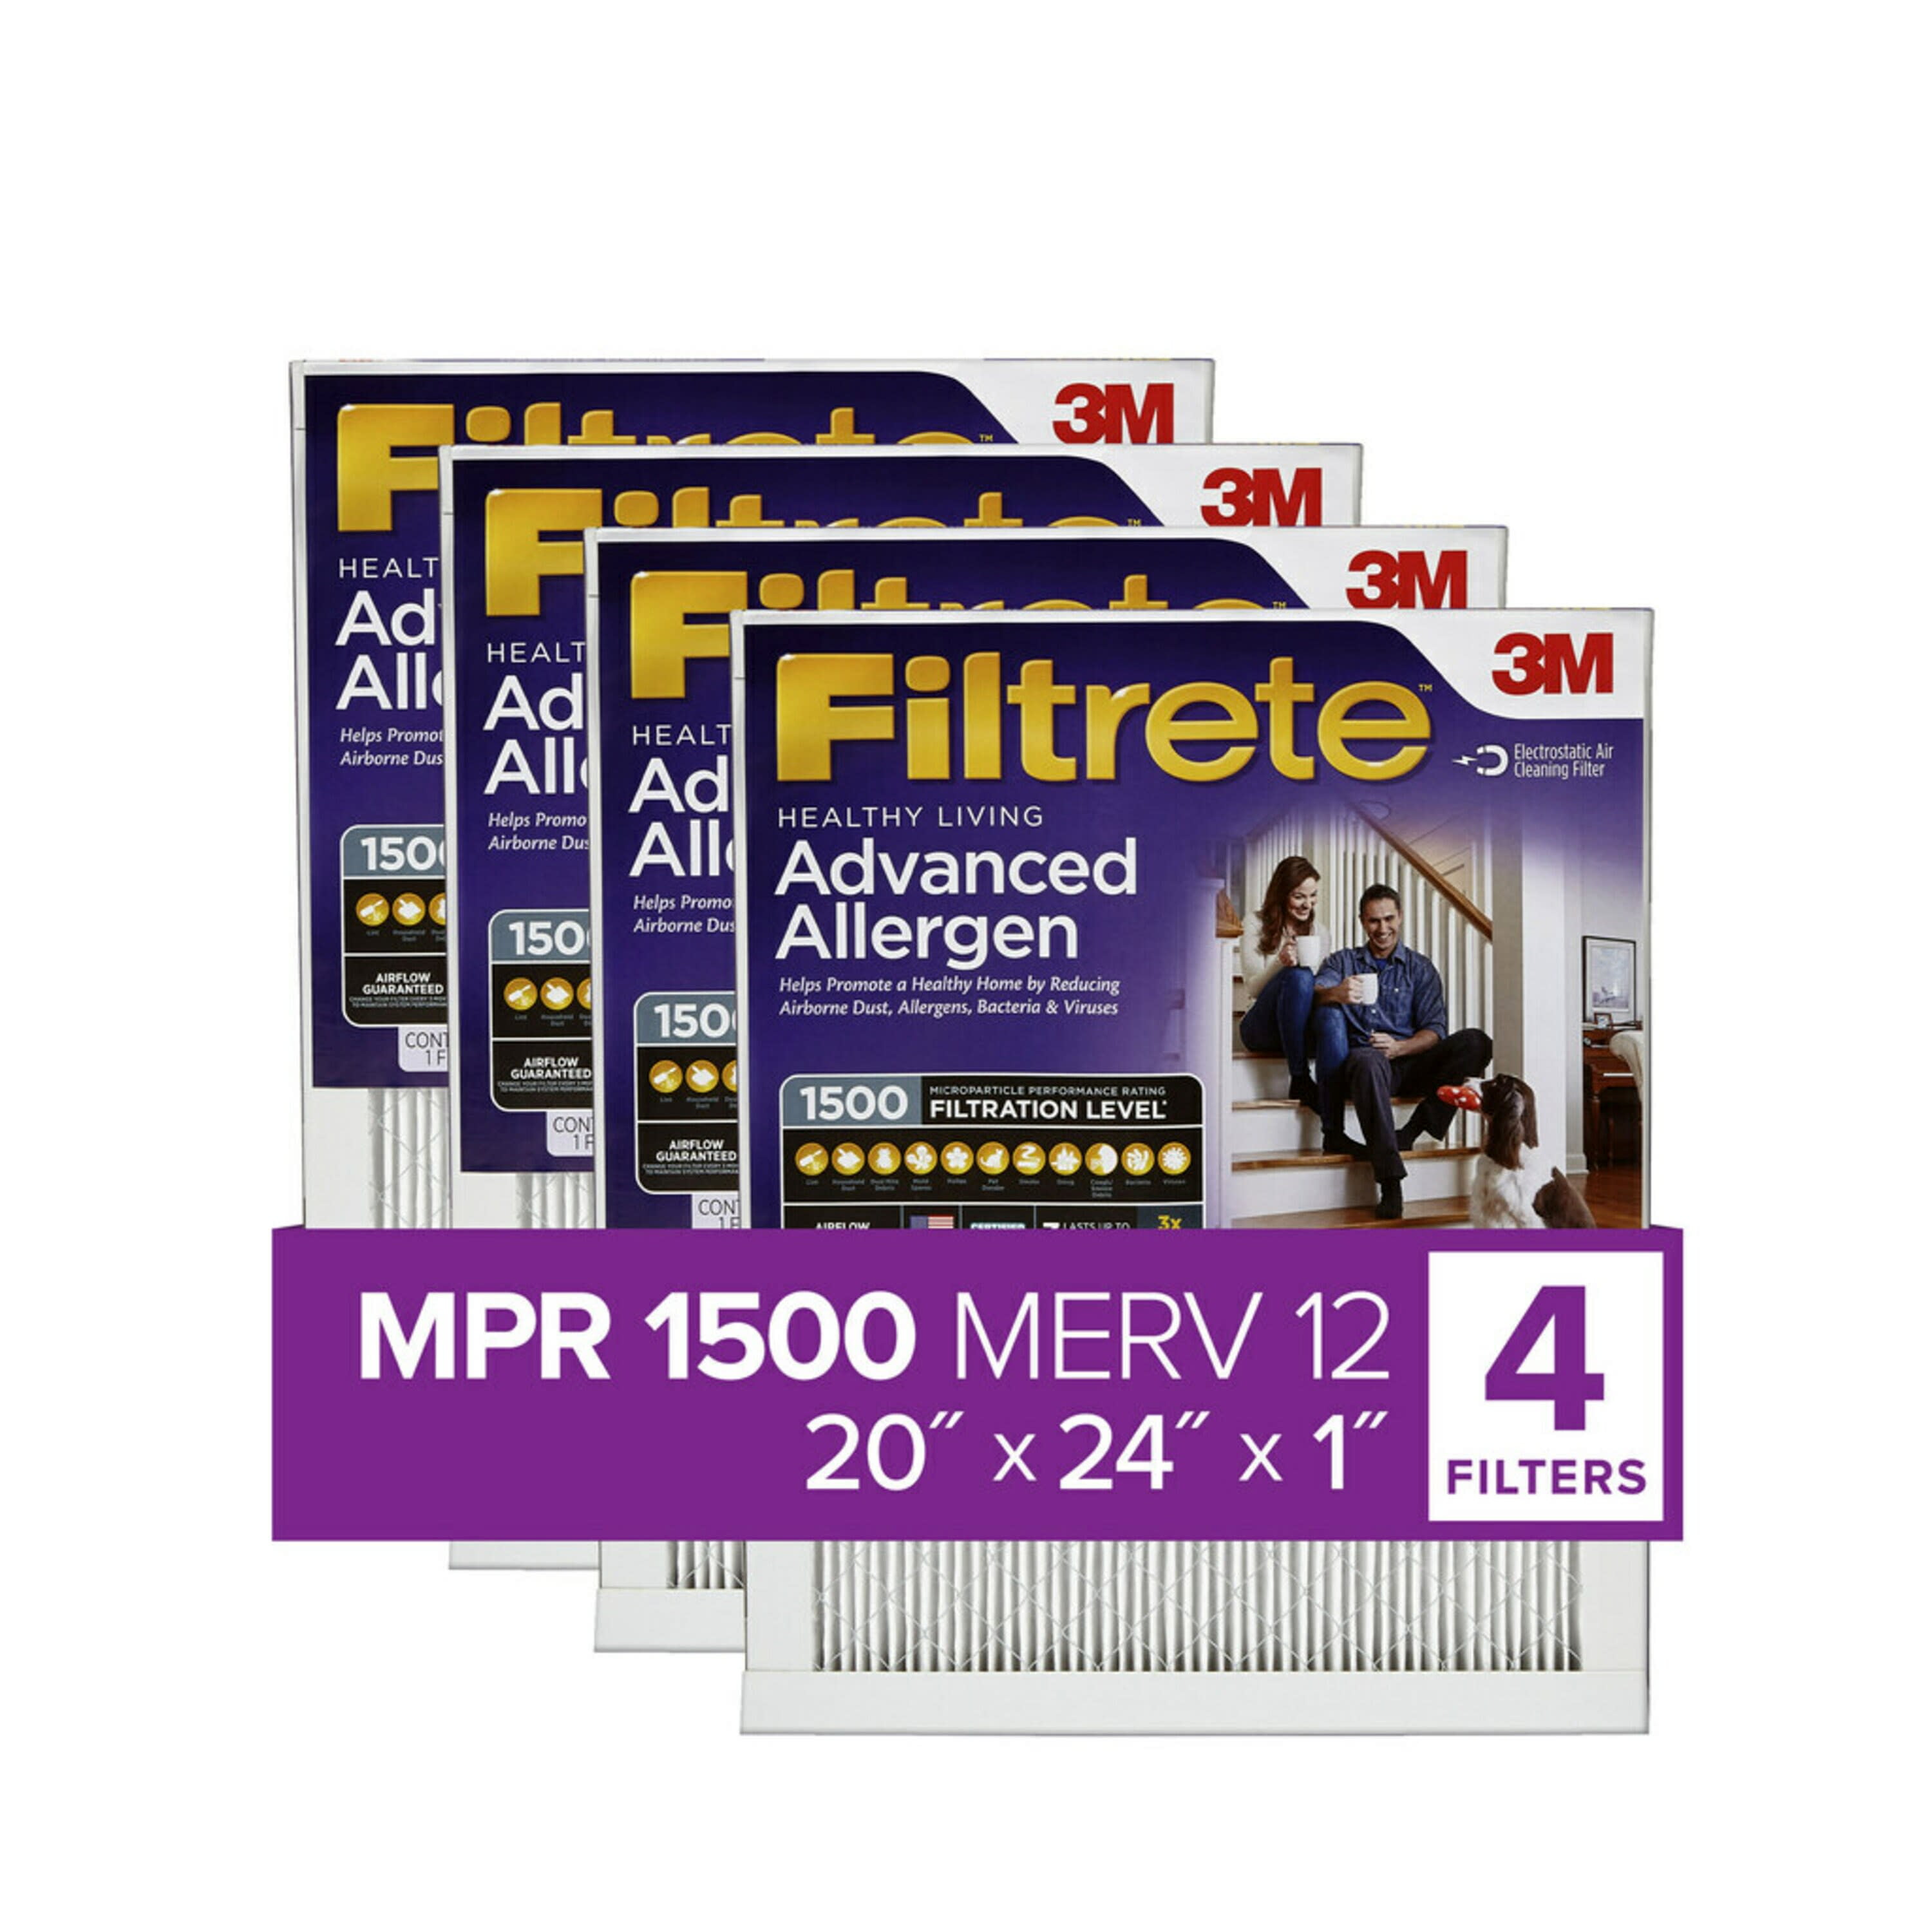 filtrete-by-3m-20x24x1-merv-12-advanced-allergen-reduction-hvac